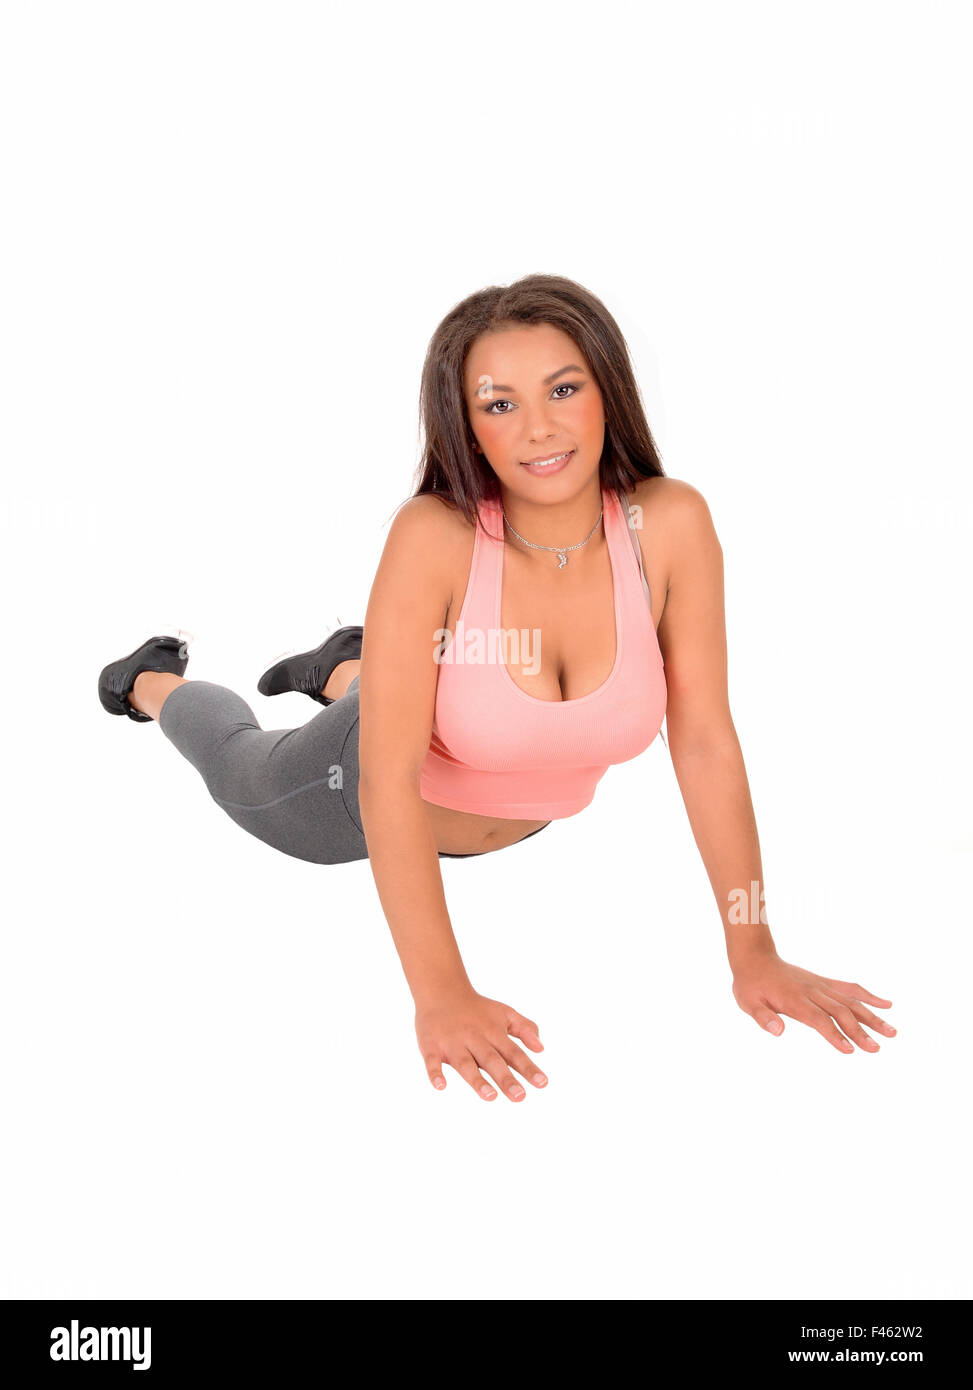 Woman doing pushups. Stock Photo